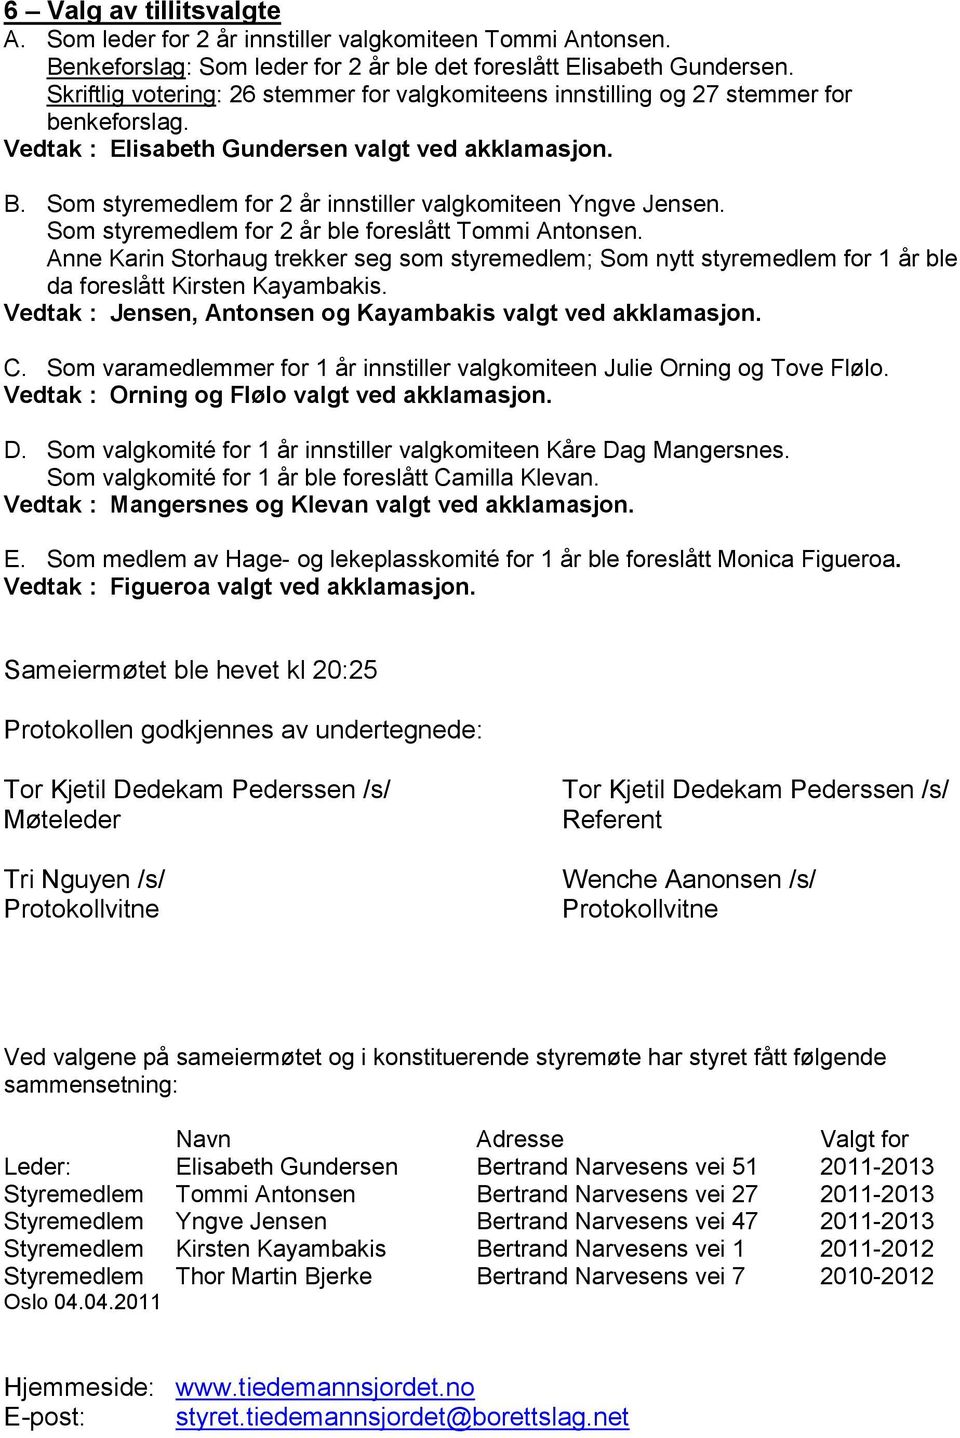 Som styremedlem for 2 år innstiller valgkomiteen Yngve Jensen. Som styremedlem for 2 år ble foreslått Tommi Antonsen.